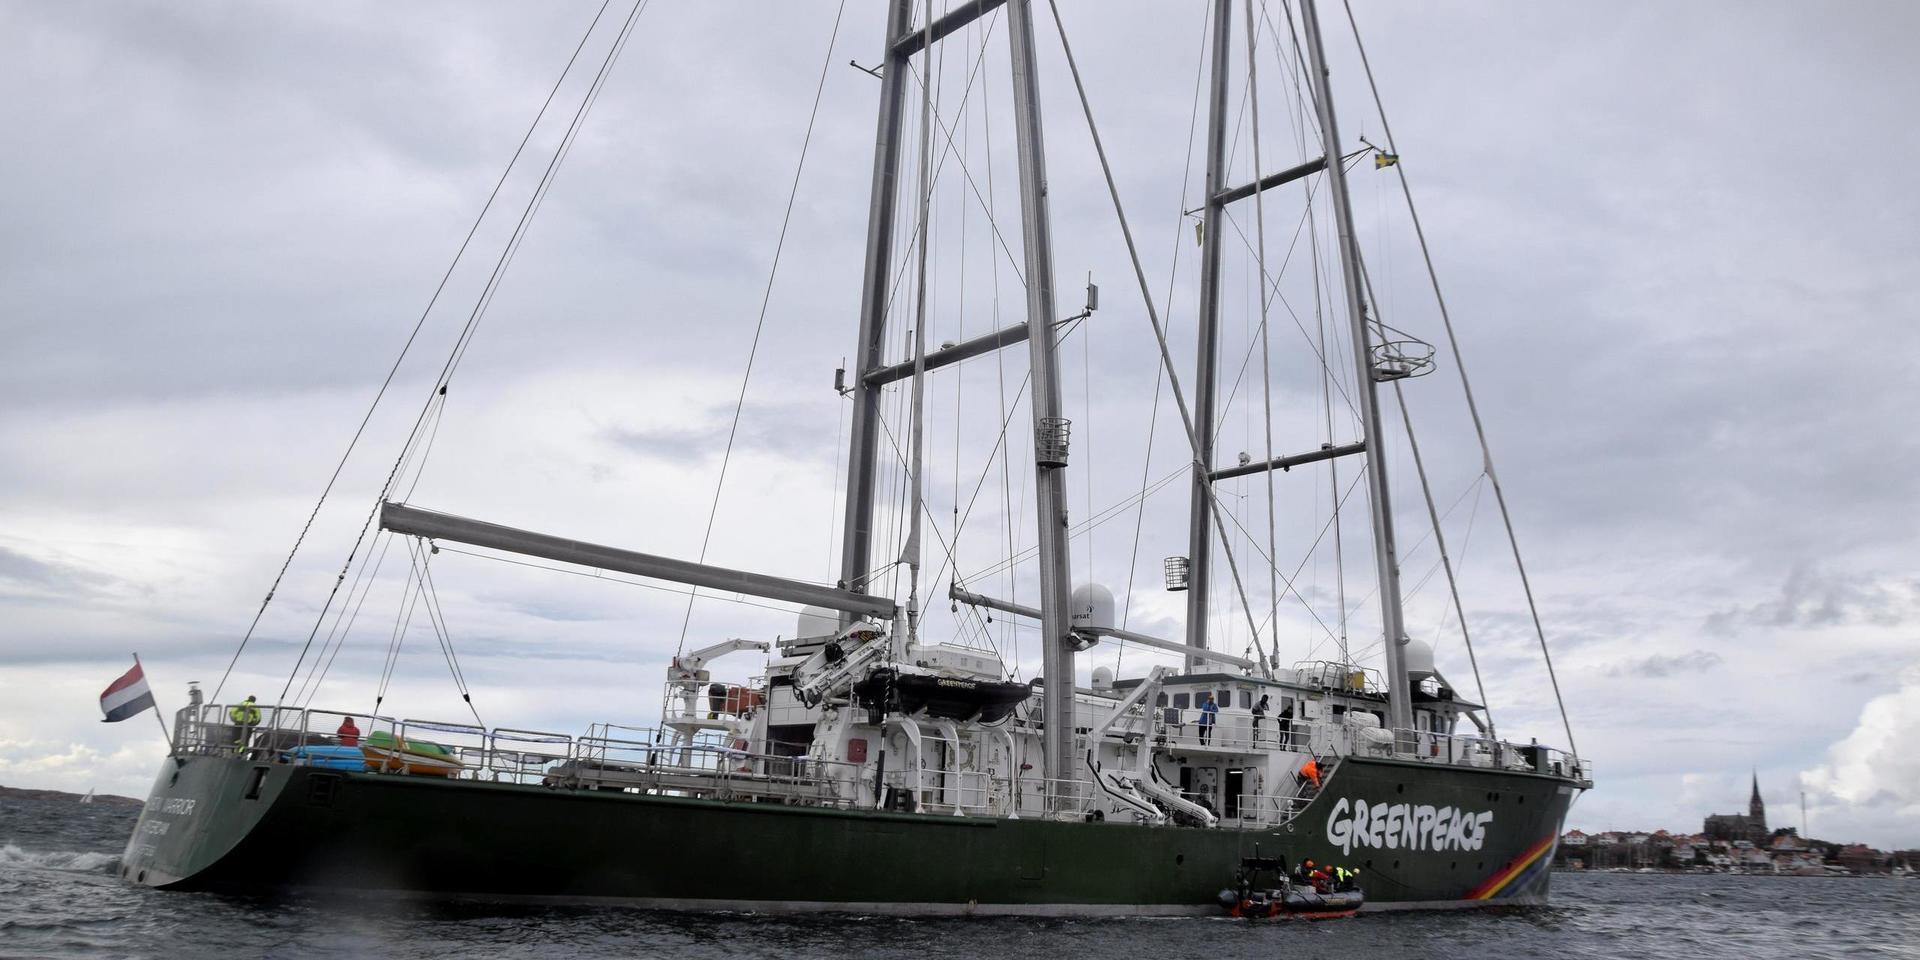 Greenpeace fartyg Rainbow Warrior deltar nu i en aktion för att protestera mot planerna på att bygga ut Preems oljeraffinaderi i Lysekil.